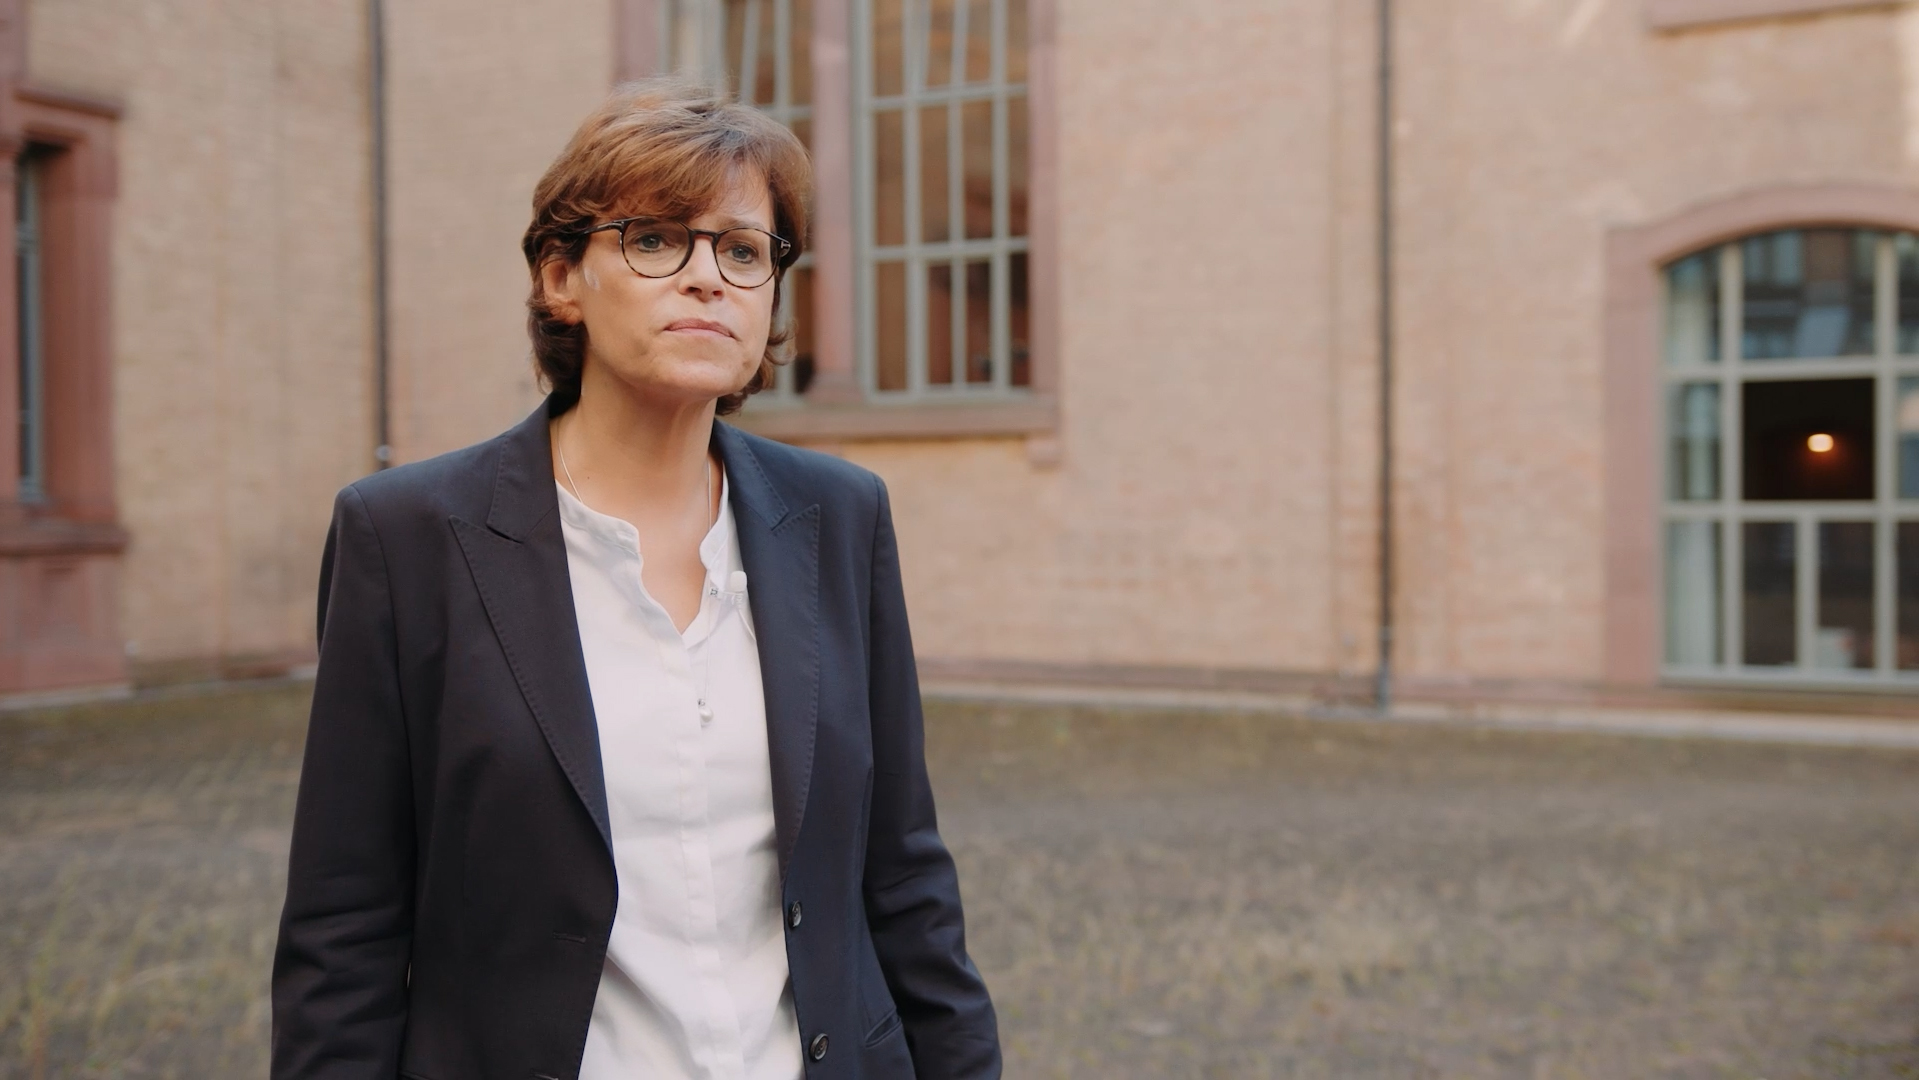 Porträt von Prof. Dr. Pia Müller Tamm. Sie steht im Innenhof der Kunsthalle und trägt einen dunkelblauen Blazer.